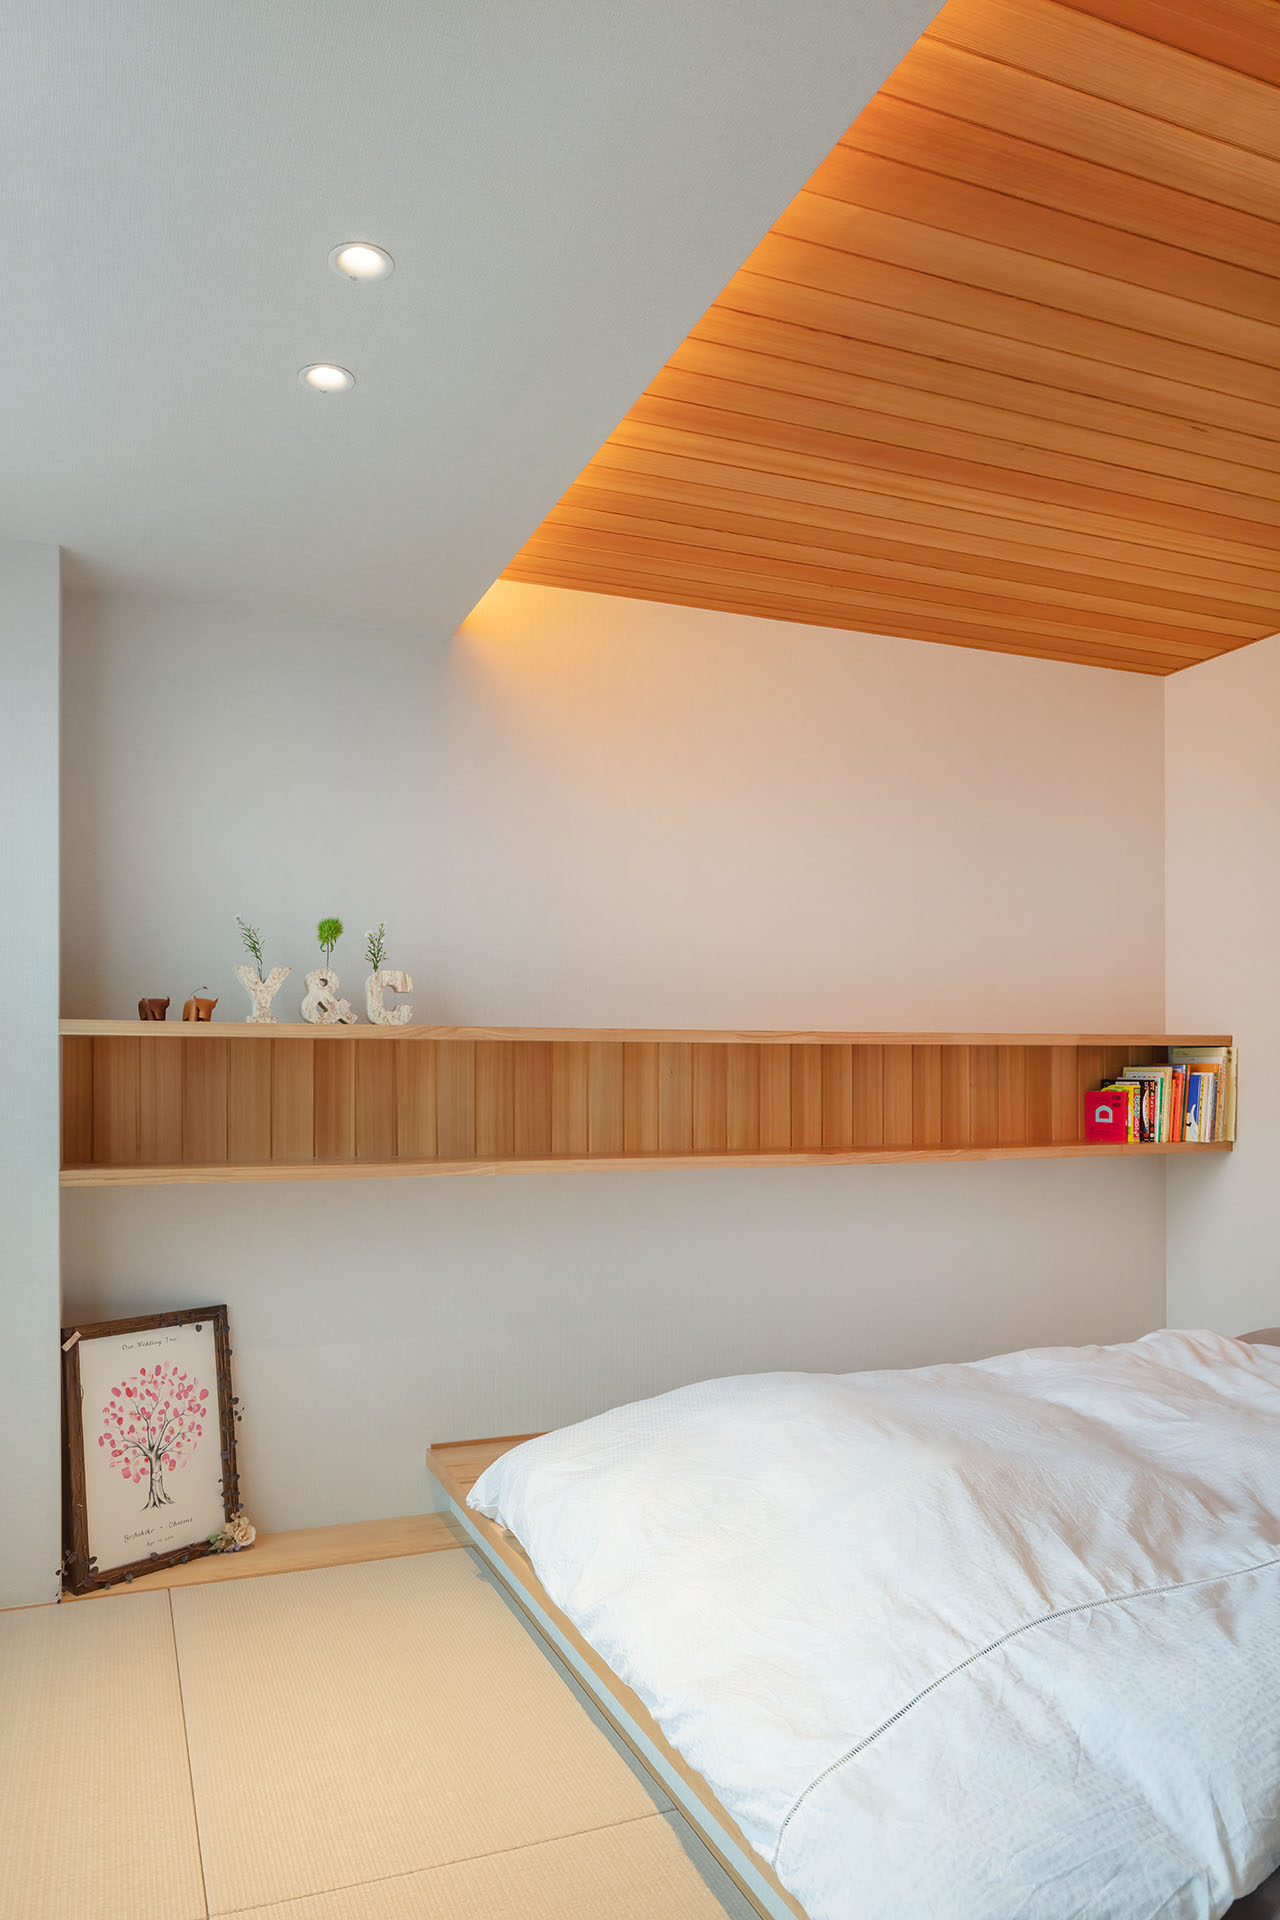 利便性とデザイン性を備えた寝室